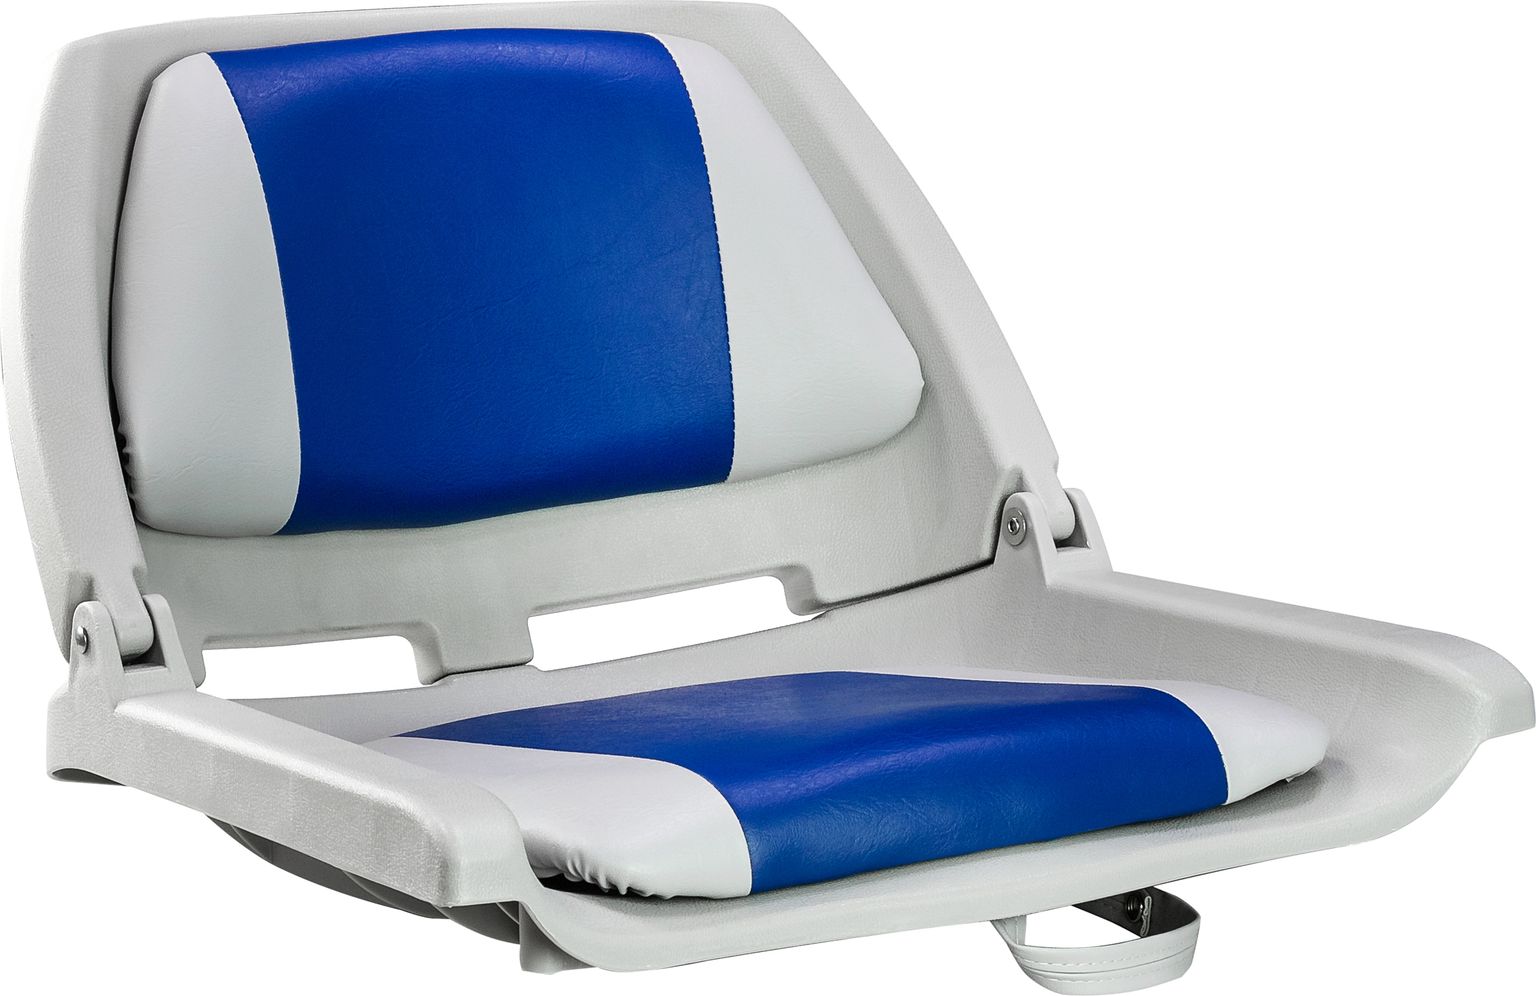 Кресло мягкое складное, обивка винил, цвет серый/синий, Marine Rocket 75109GB-MR сиденье мягкое pro casting обивка синий винил 75104b